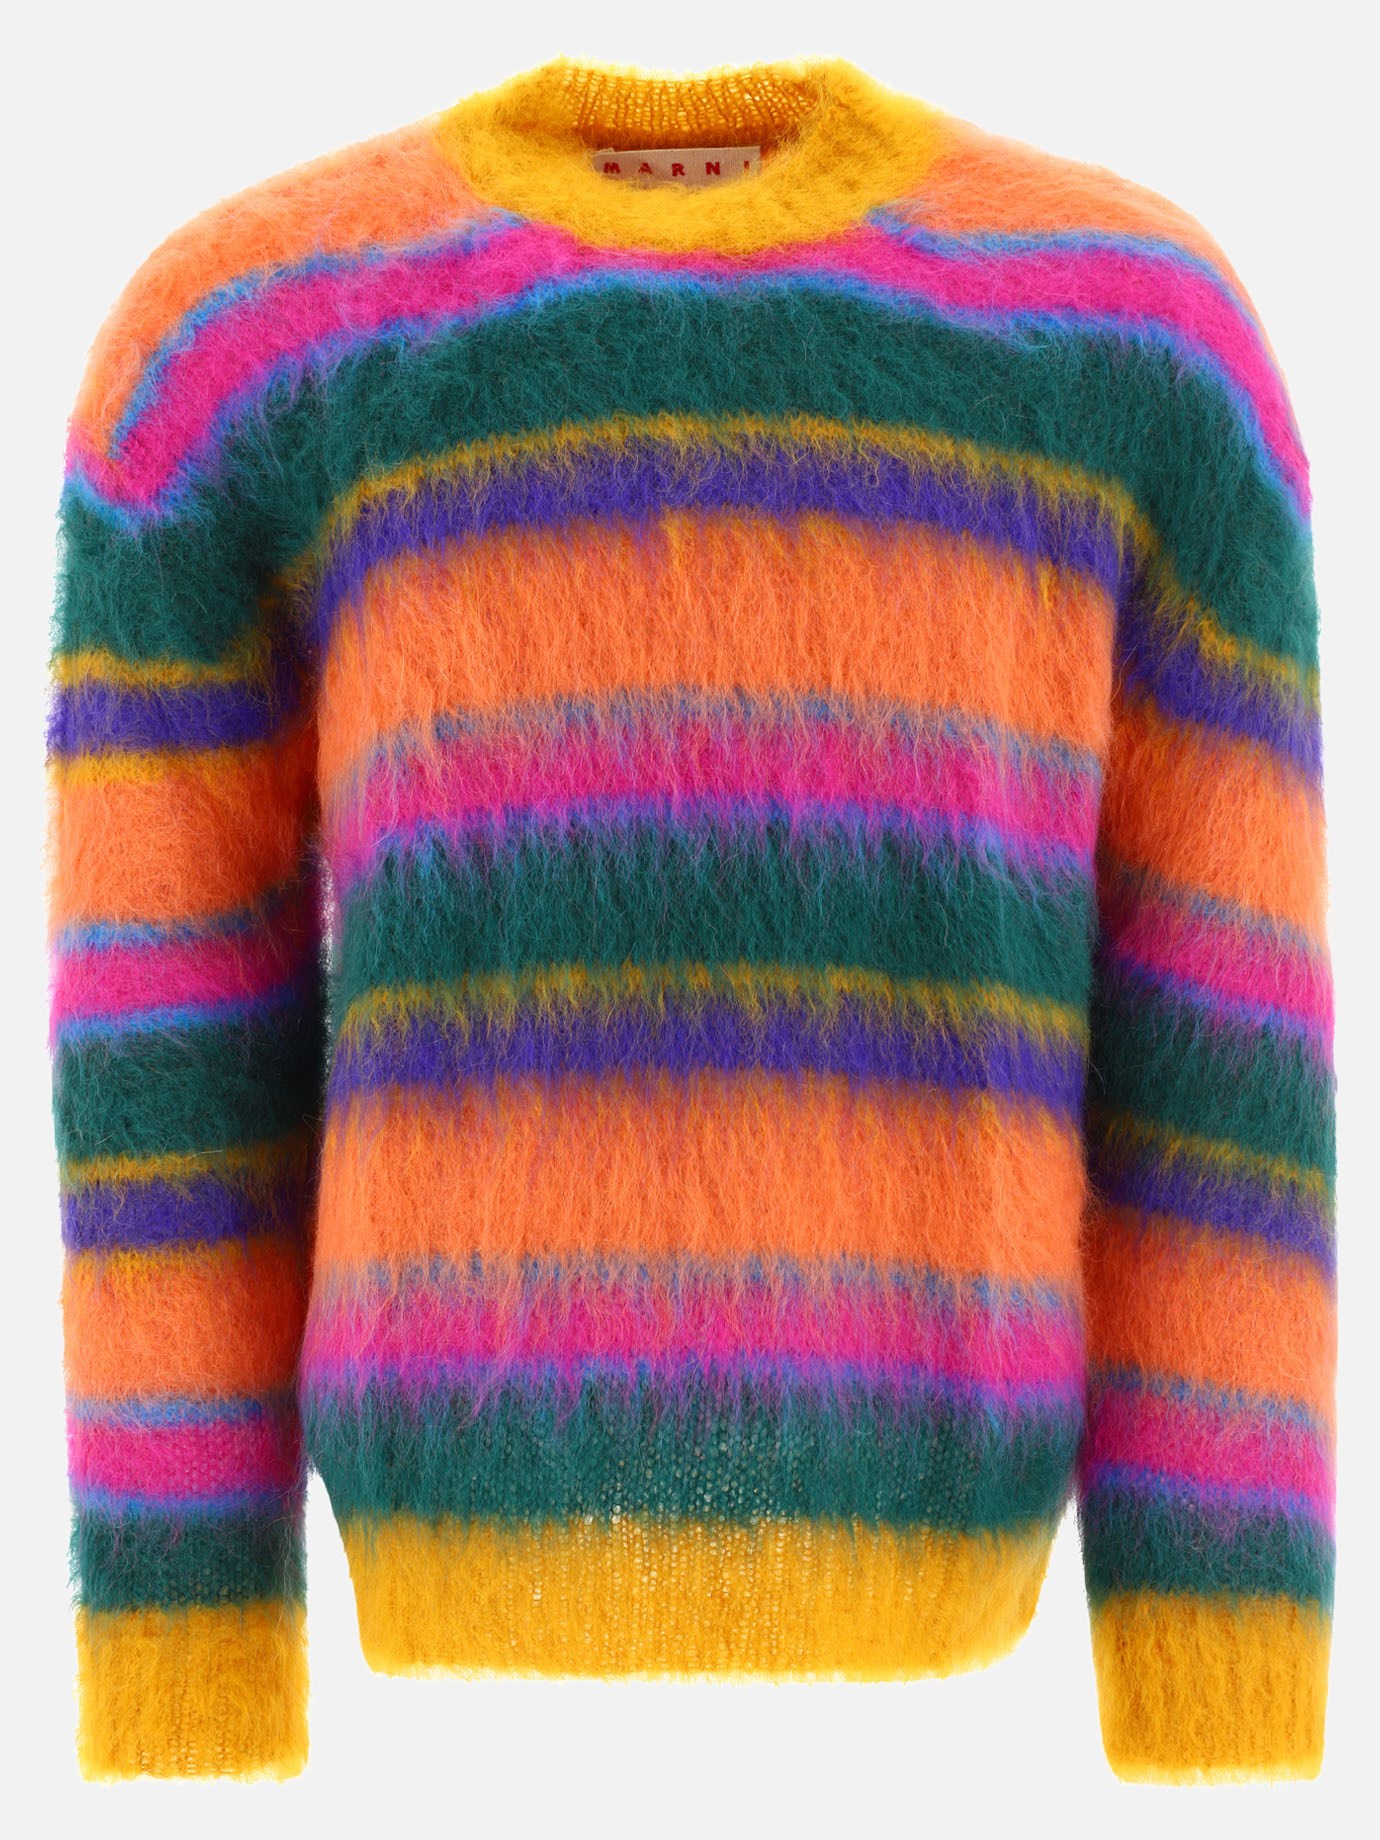  Fuzzy Wuzzy Brushed sweaterby Marni - 1